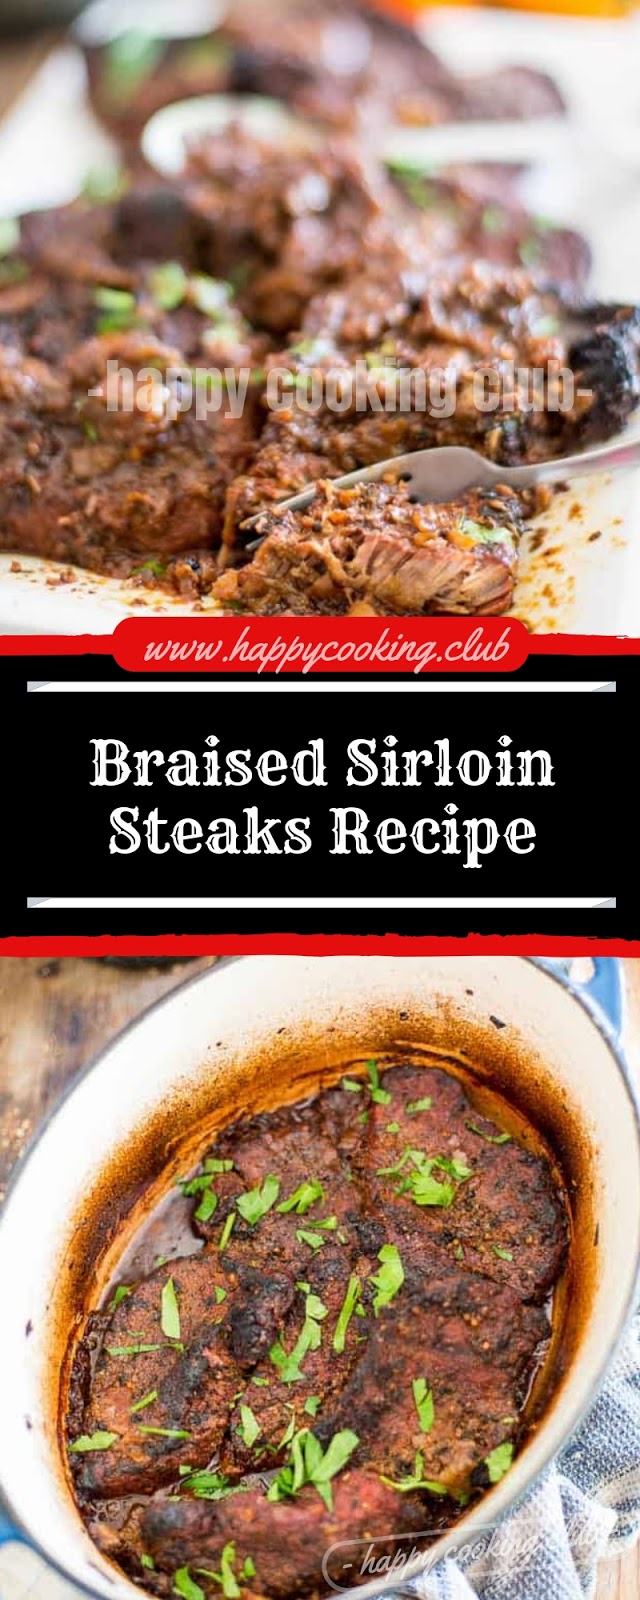 Braised Sirloin Steaks Recipe